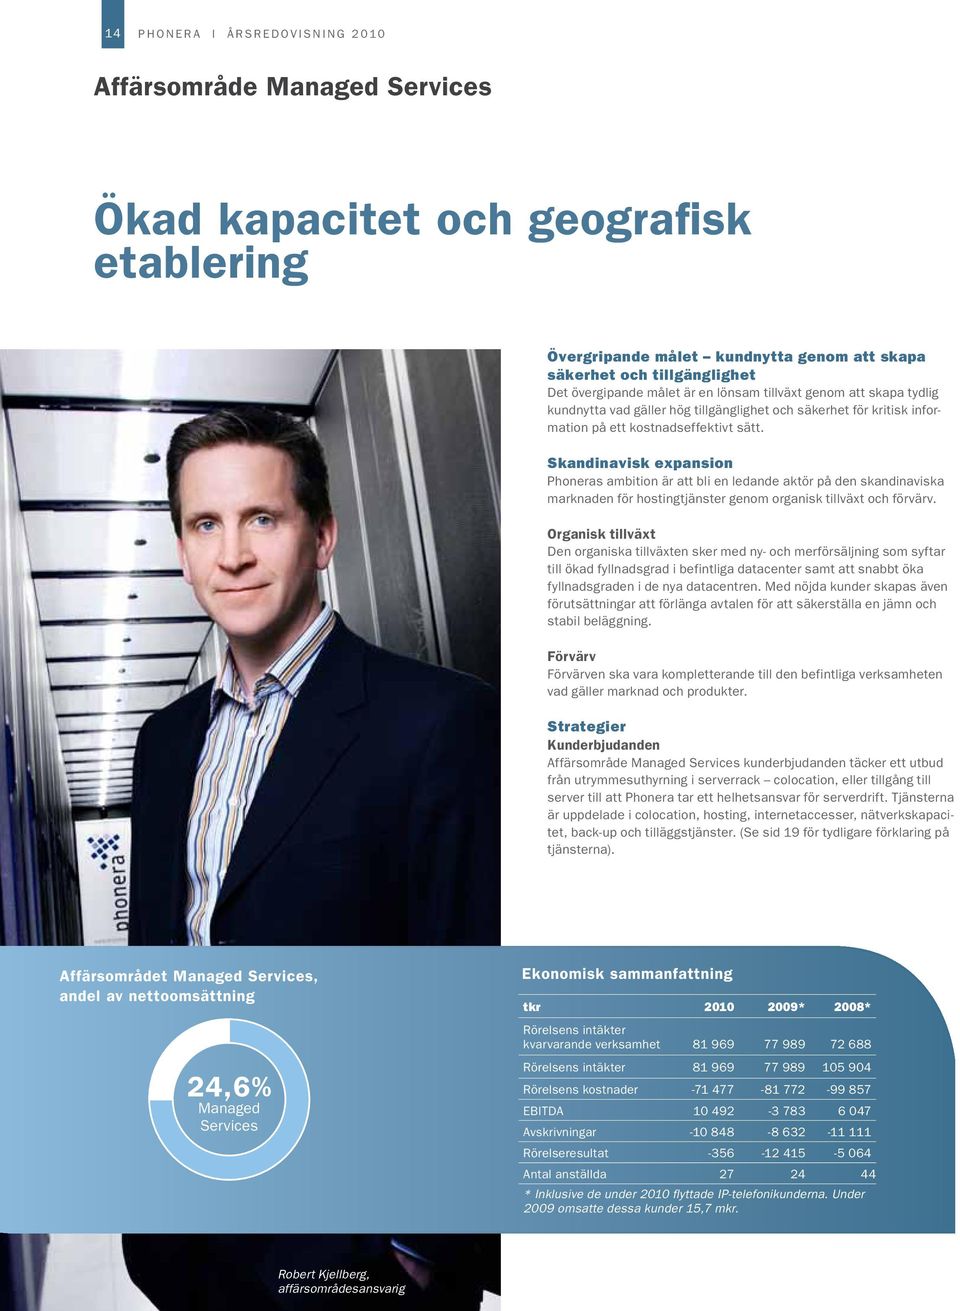 Skandinavisk expansion Phoneras ambition är att bli en ledande aktör på den skandinaviska marknaden för hostingtjänster genom organisk tillväxt och förvärv.